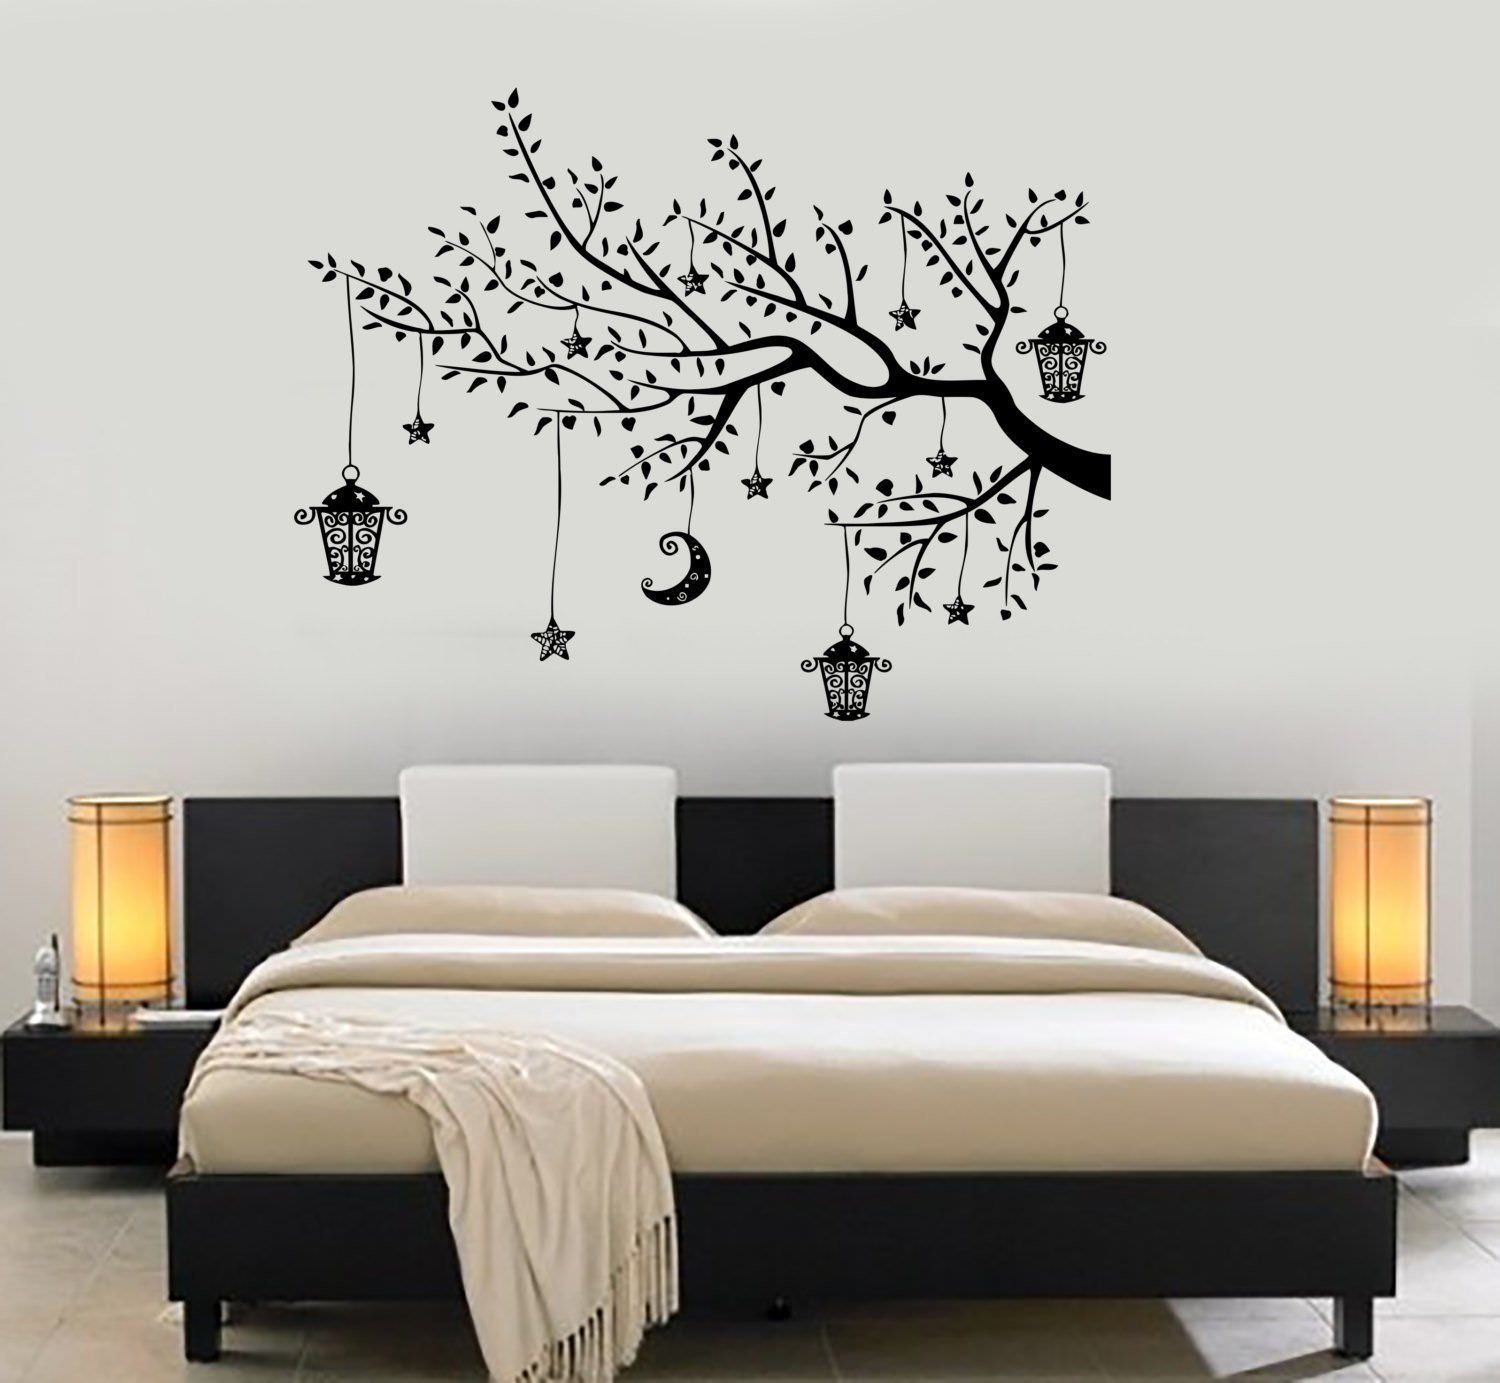 Xem Ngay: Top 20 mẫu trang trí phòng ngủ bằng khung ảnh đẹp mê hồn ...